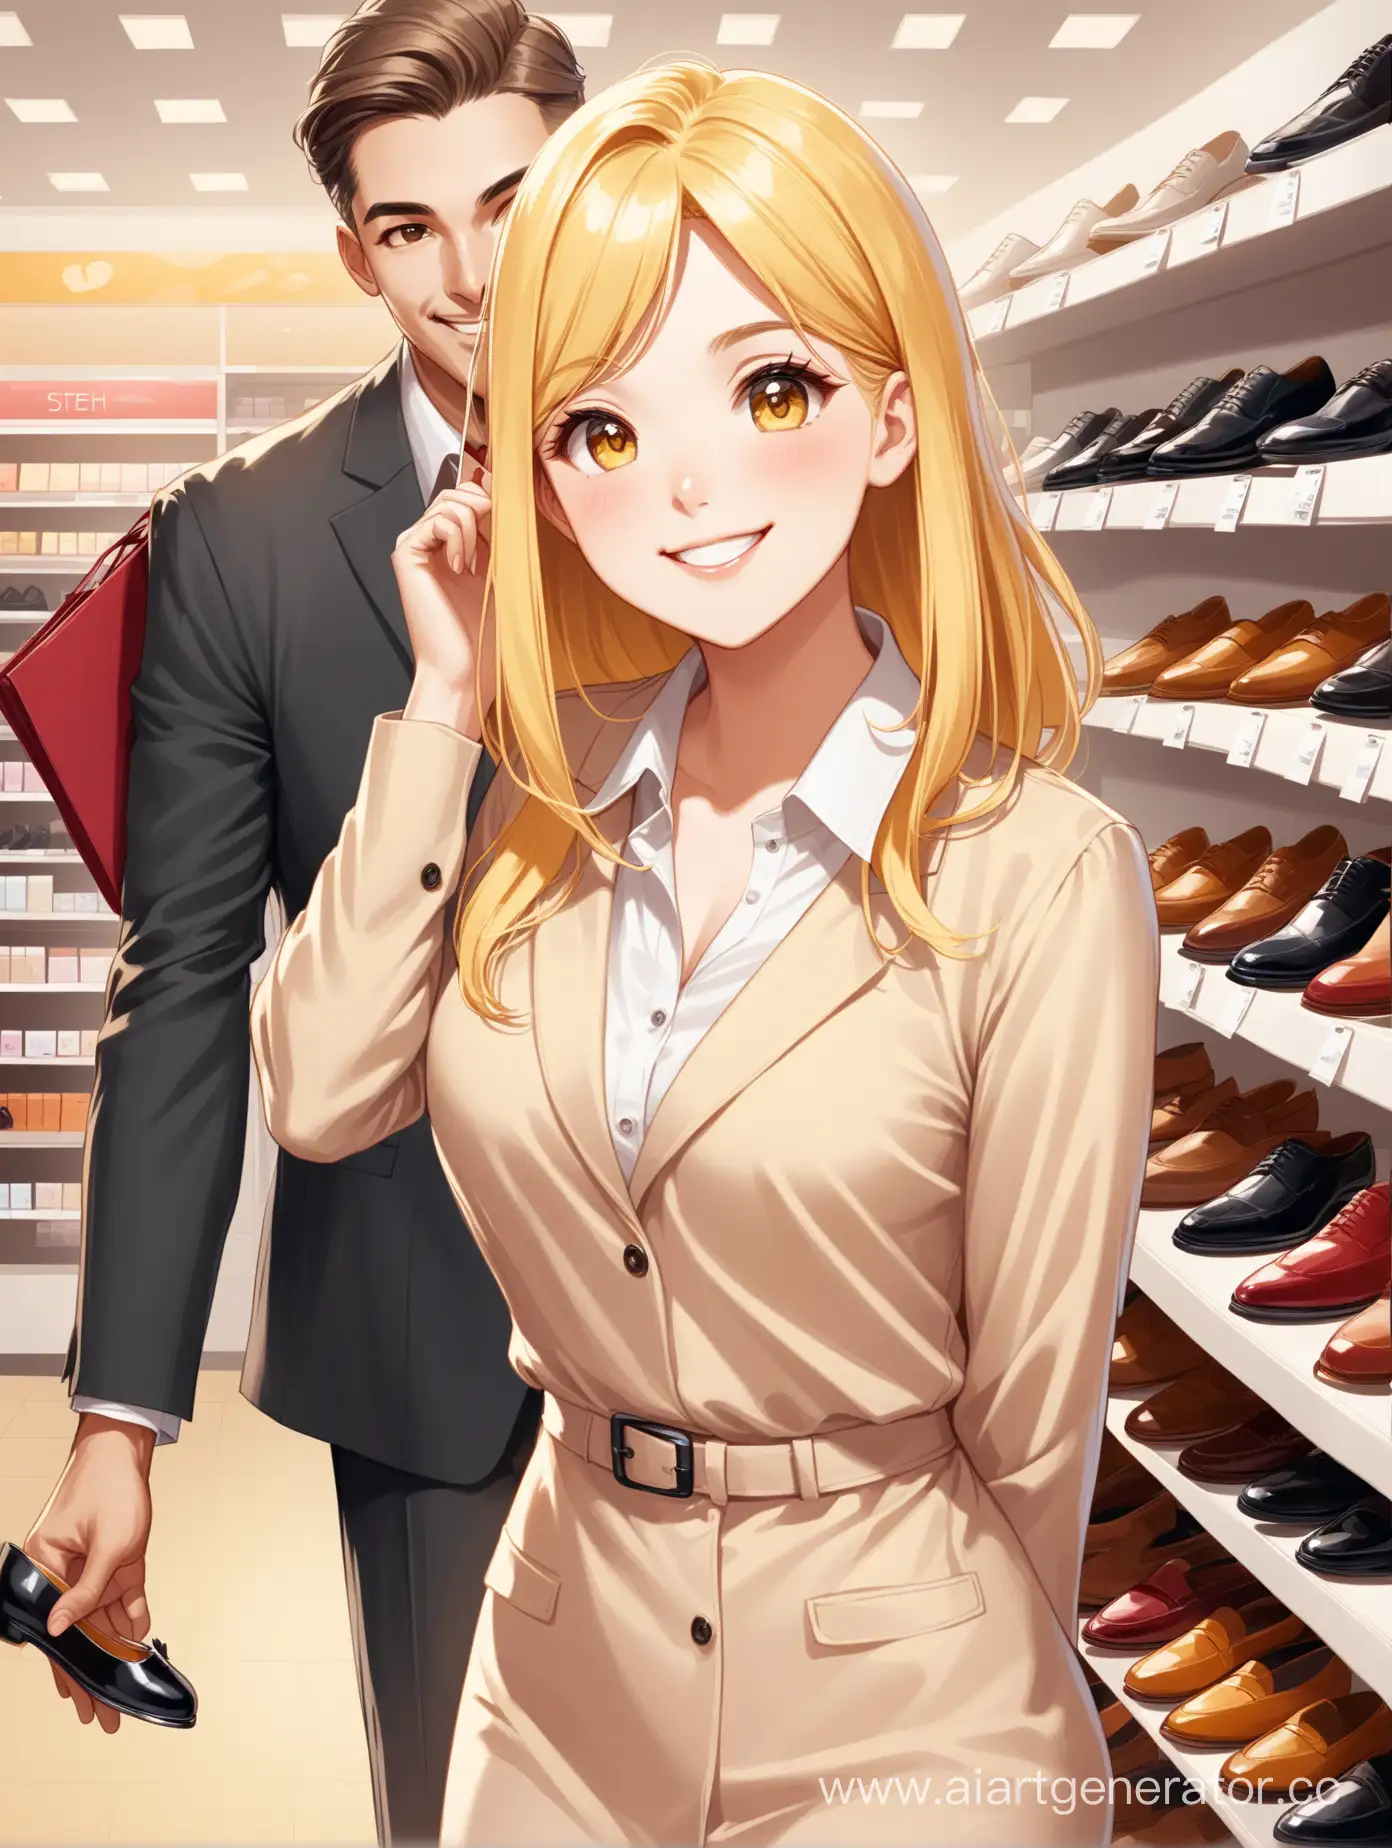  девушка блондинка  продавец обуви в магазине  встречает покупателей с улыбкой